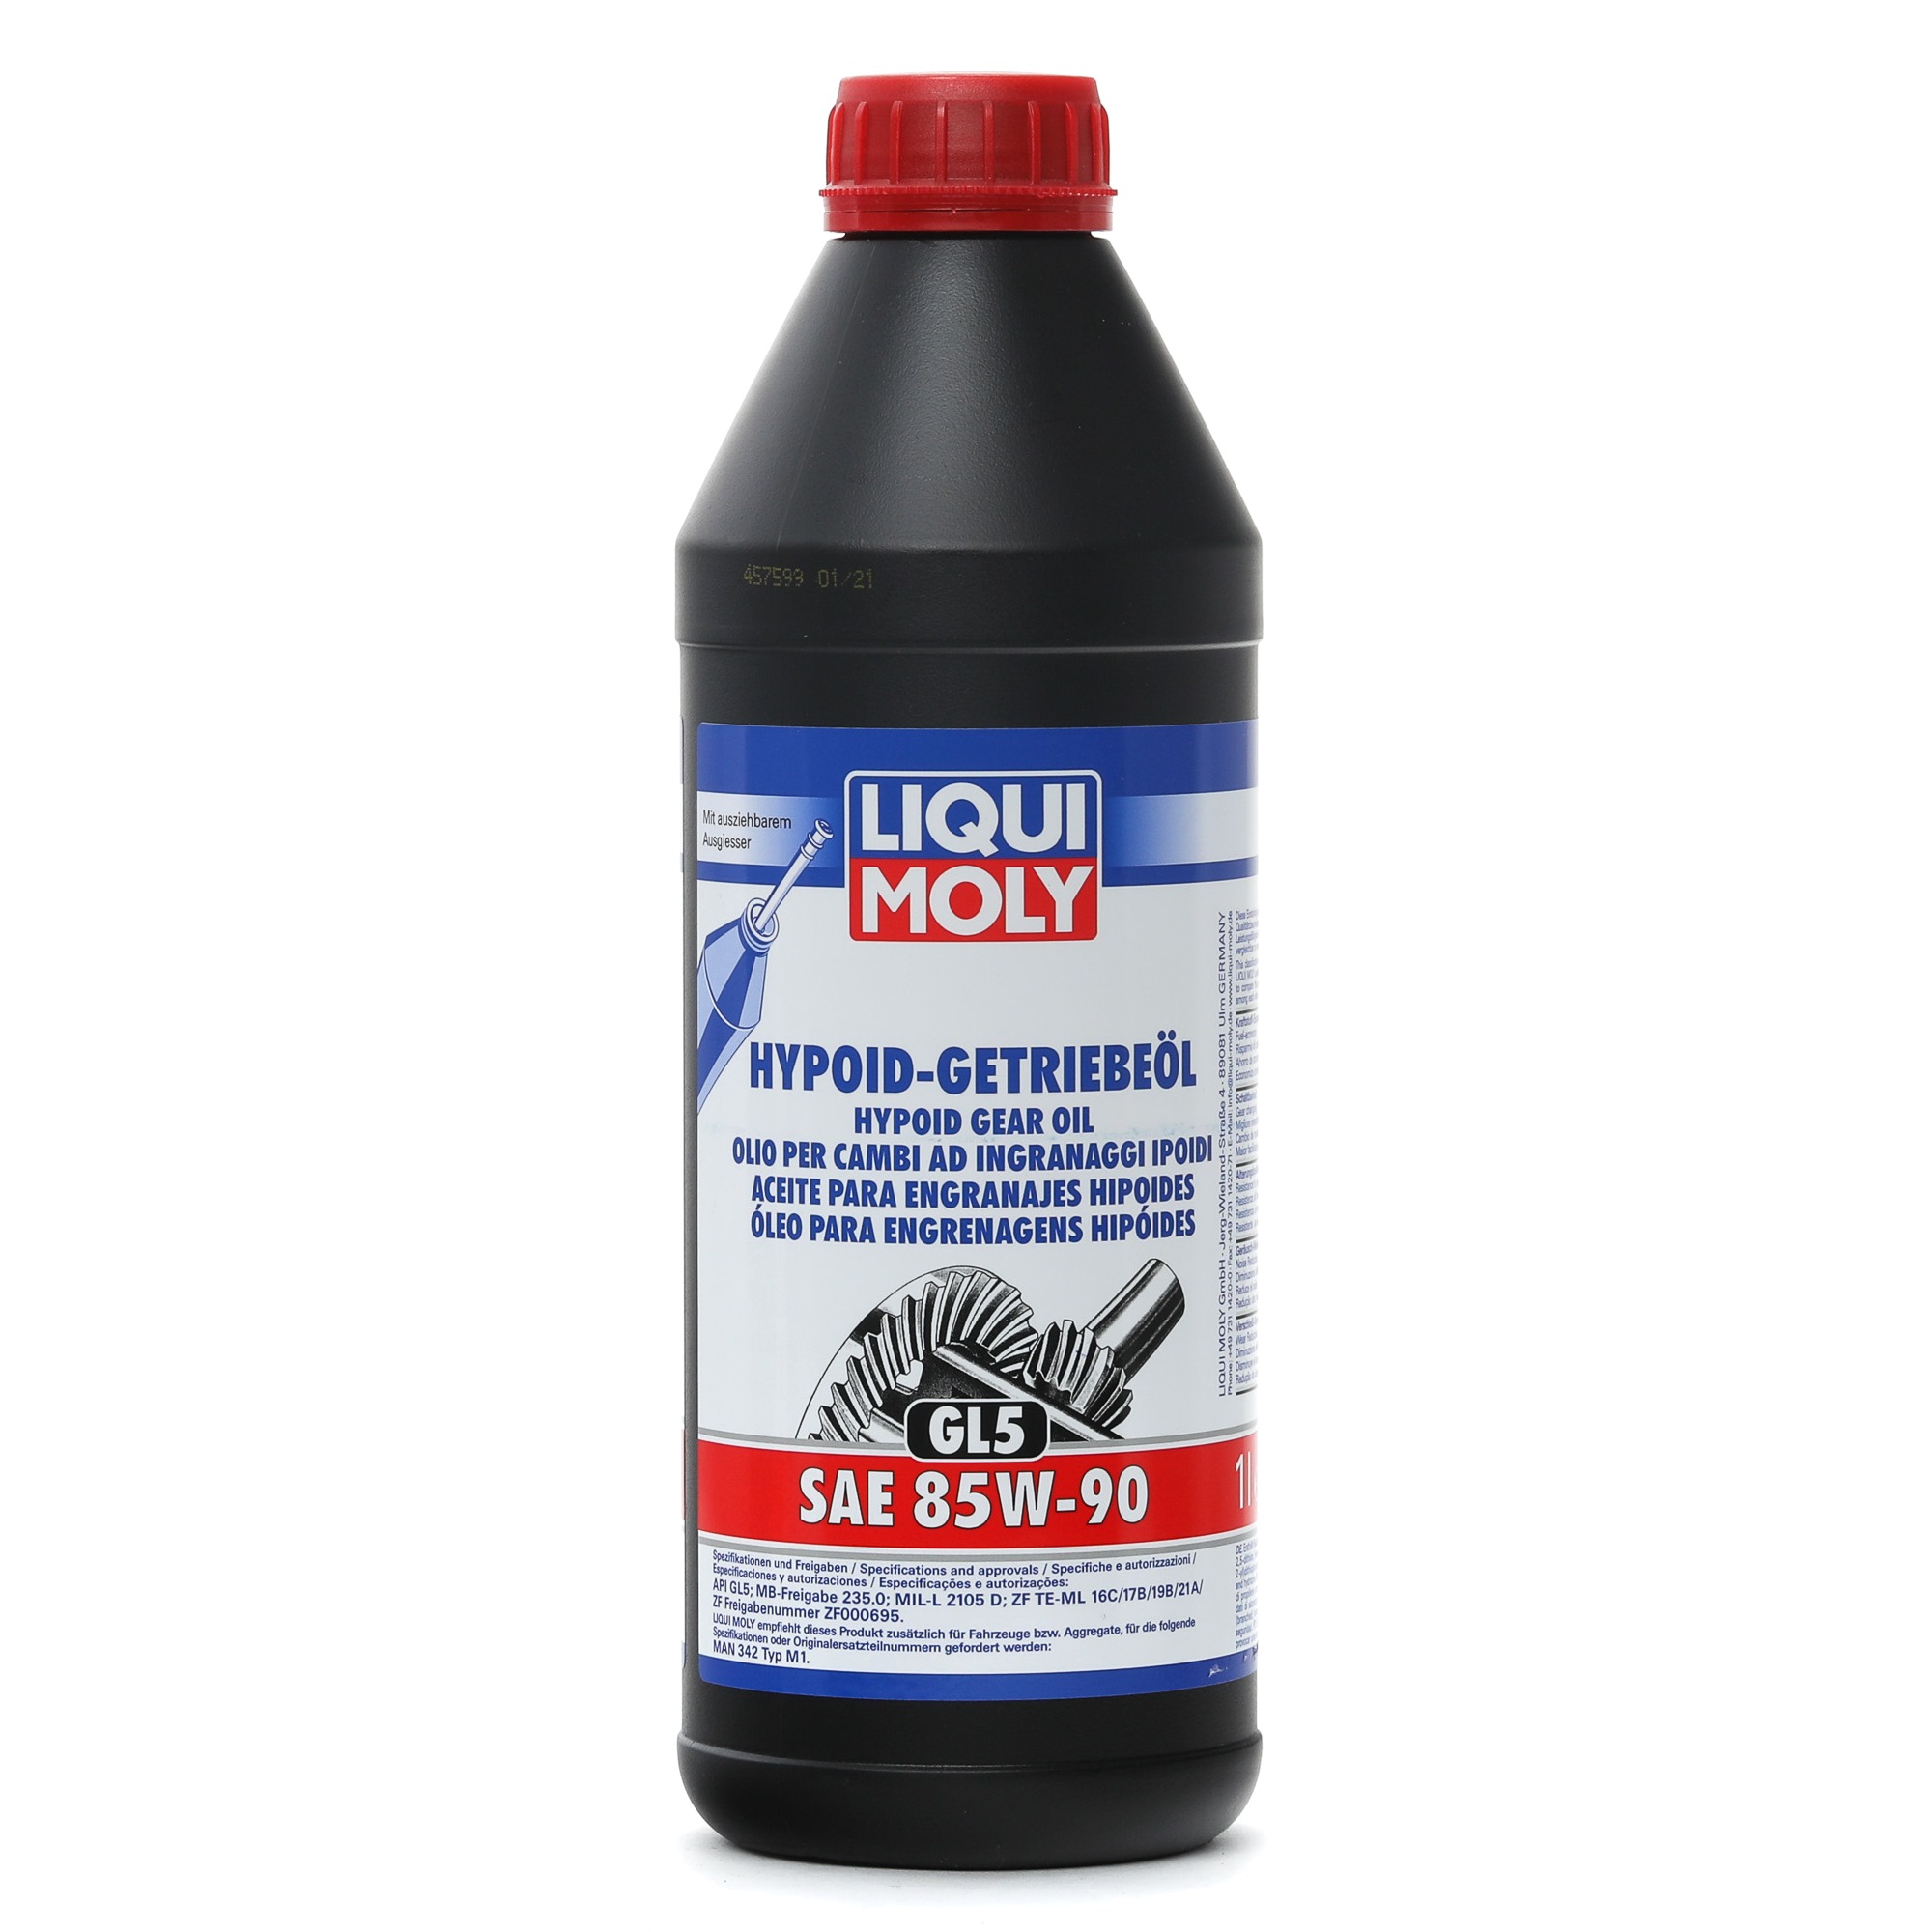 LIQUI MOLY Hypoid GL5 Getriebeöl 85W-90, Mineralöl, Inhalt: 1l 1035 KREIDLER